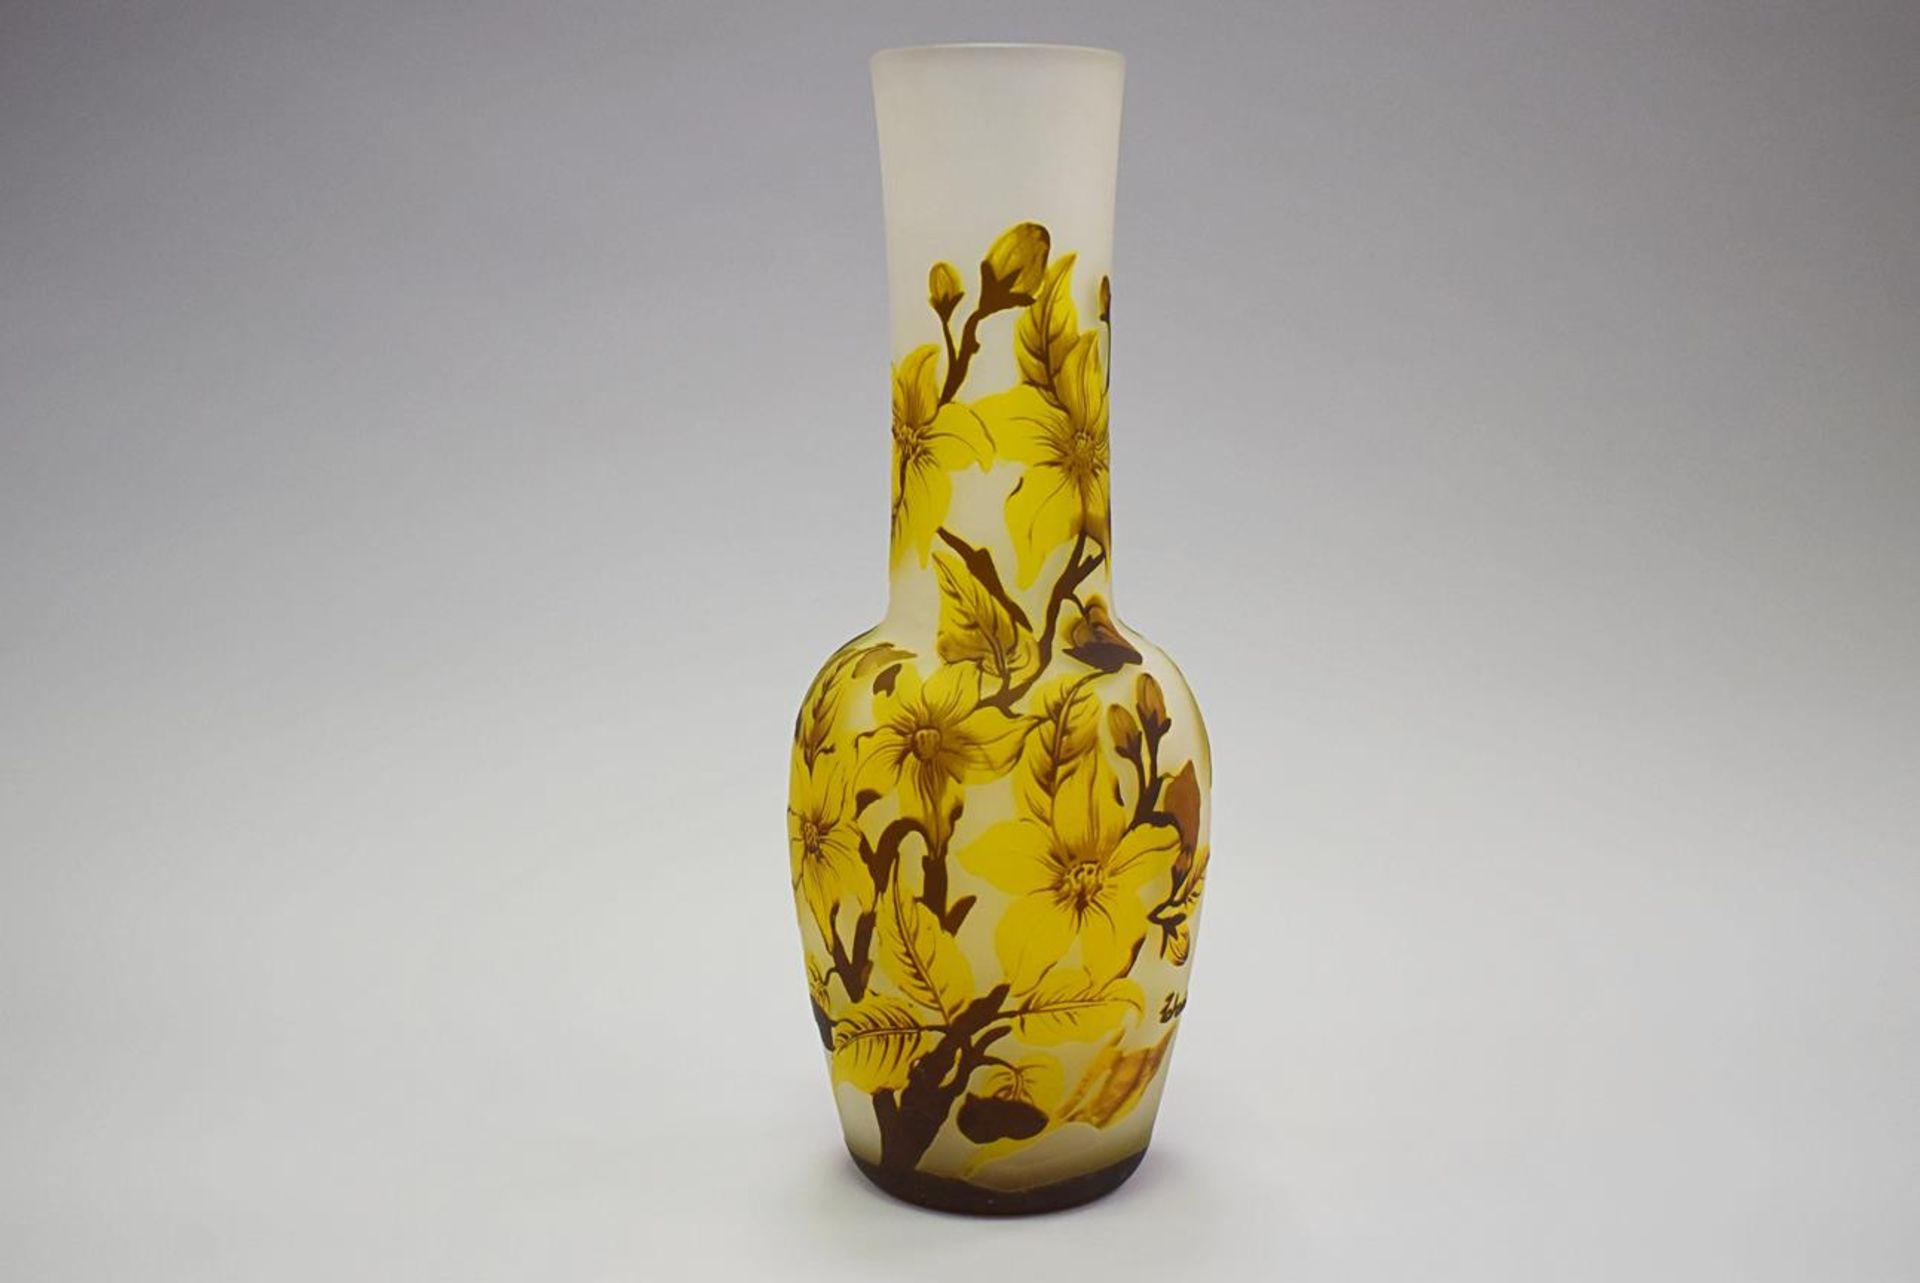 Große Vase "Zabria"- - -19.00 % buyer's premium on the hammer priceVAT margin scheme, VAT